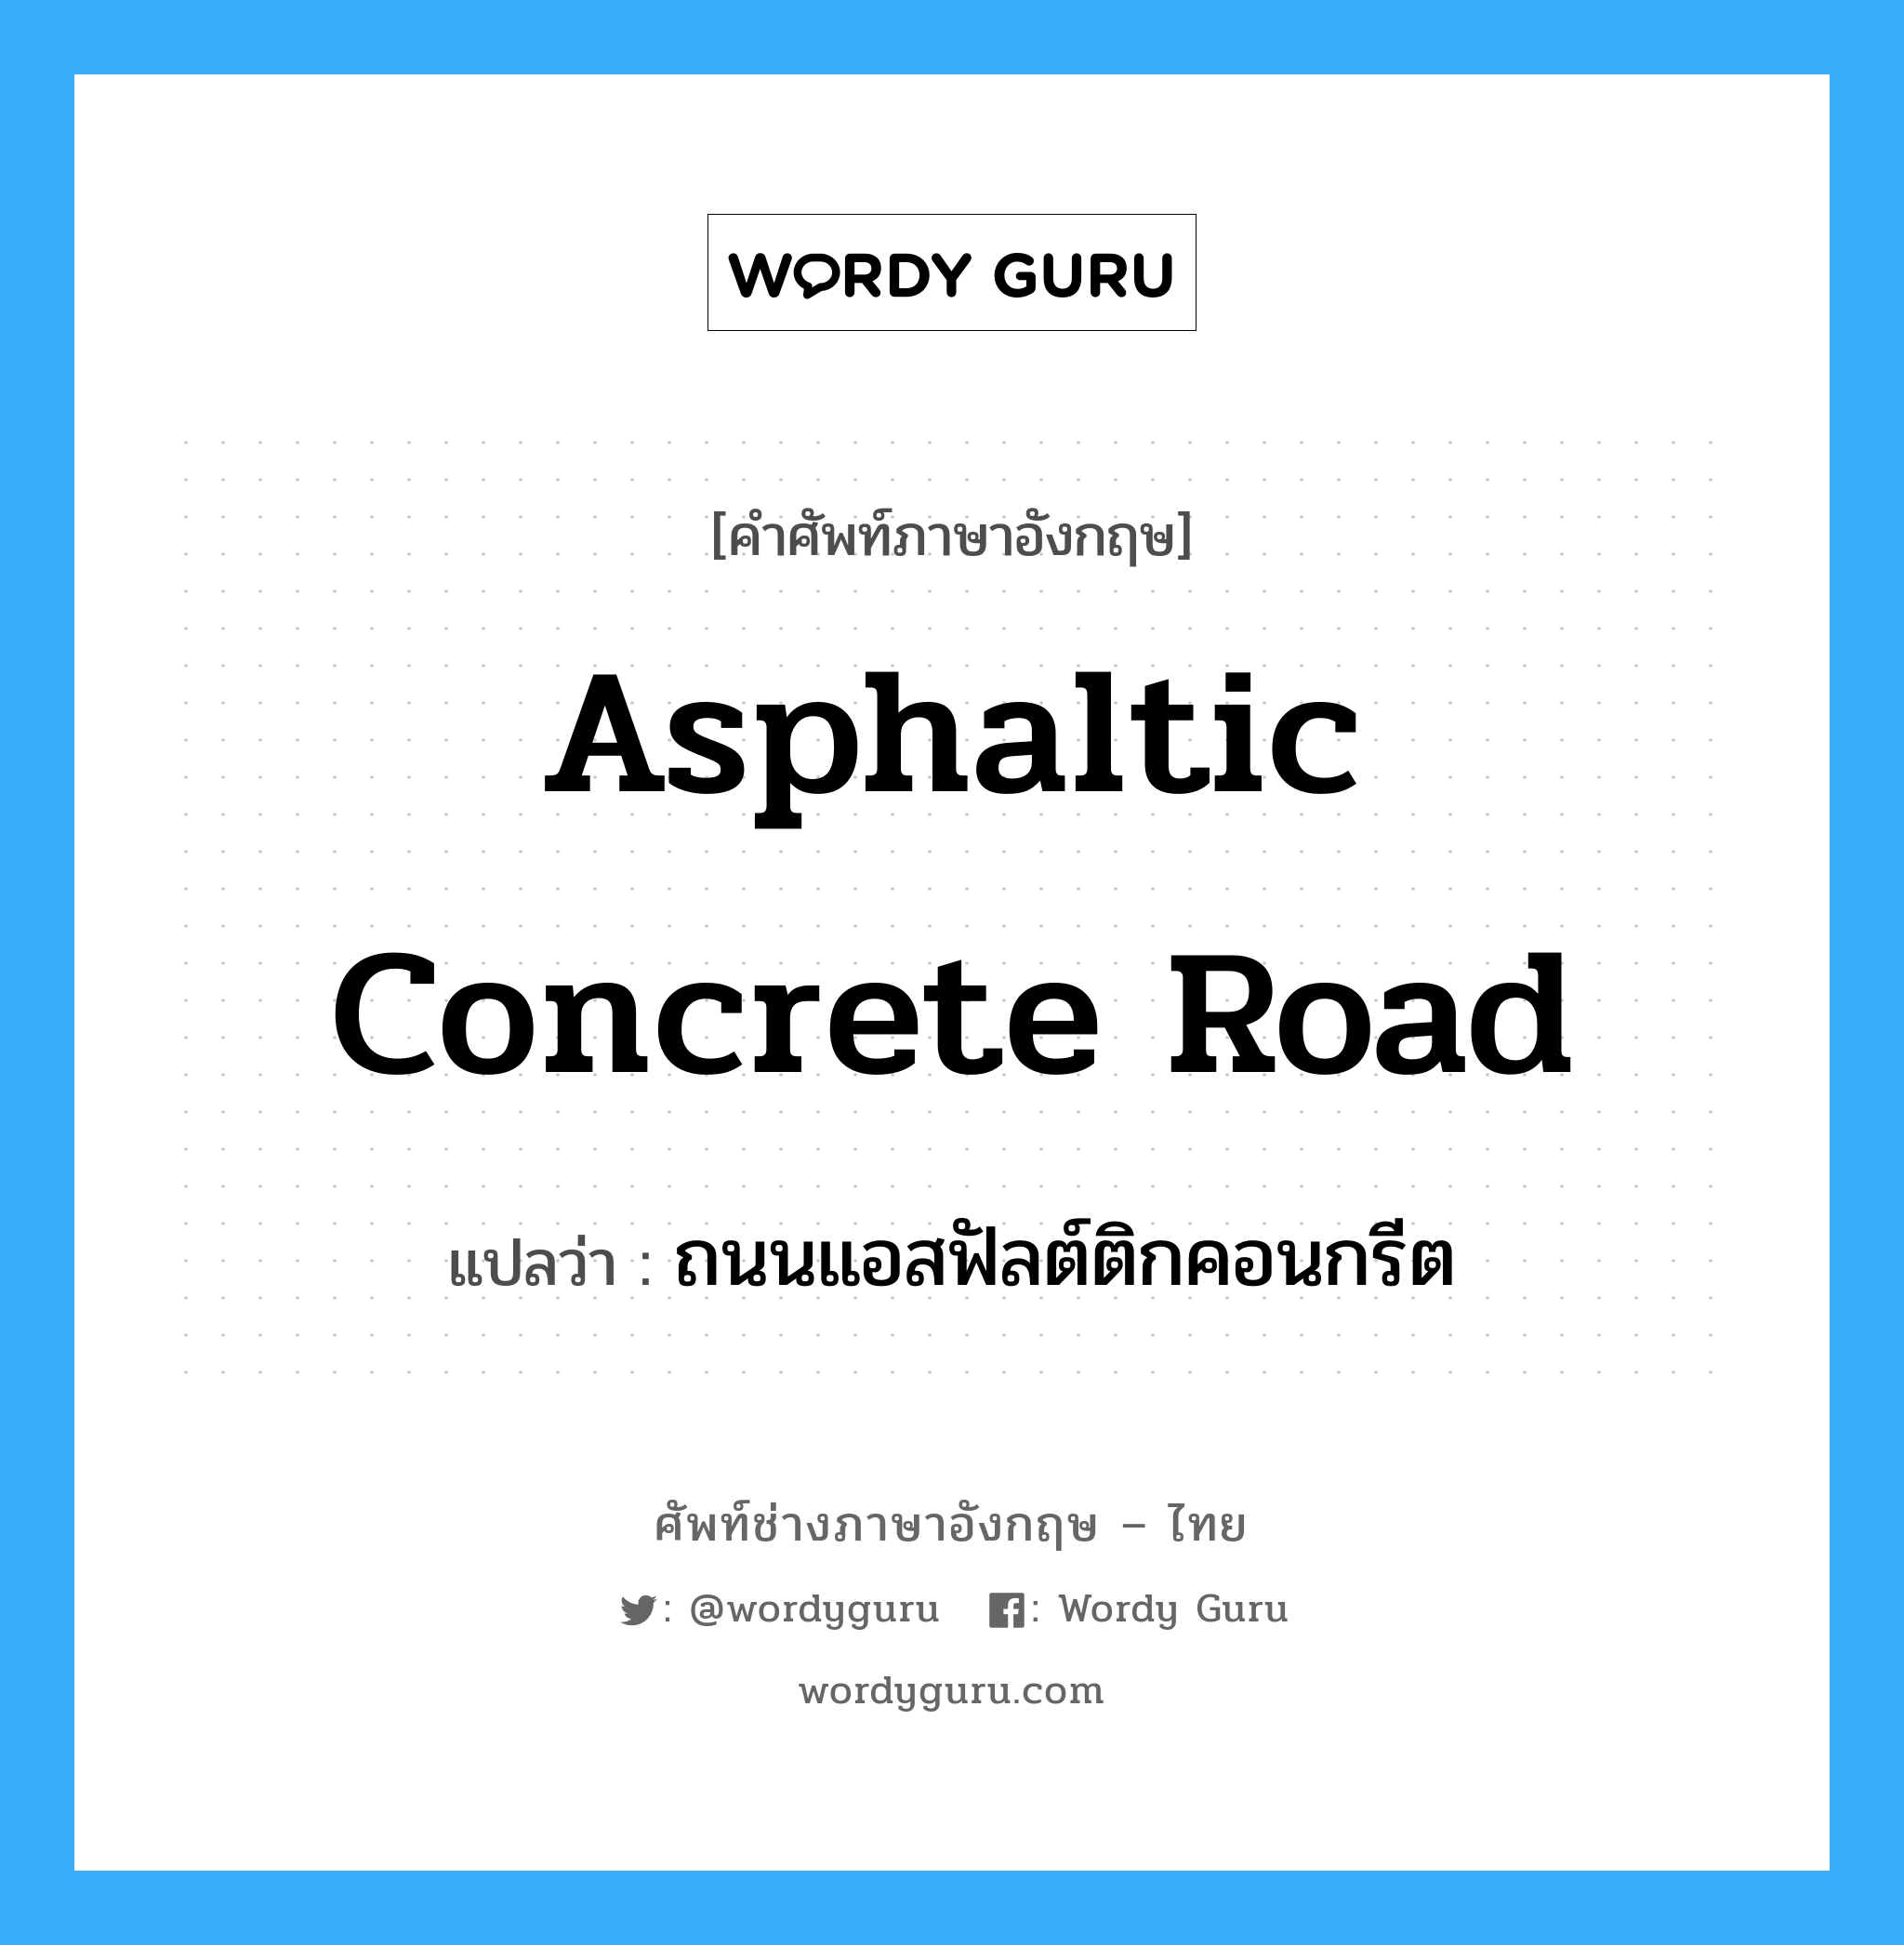 ถนนแอสฟัลต์ติกคอนกรีต ภาษาอังกฤษ?, คำศัพท์ช่างภาษาอังกฤษ - ไทย ถนนแอสฟัลต์ติกคอนกรีต คำศัพท์ภาษาอังกฤษ ถนนแอสฟัลต์ติกคอนกรีต แปลว่า asphaltic concrete road